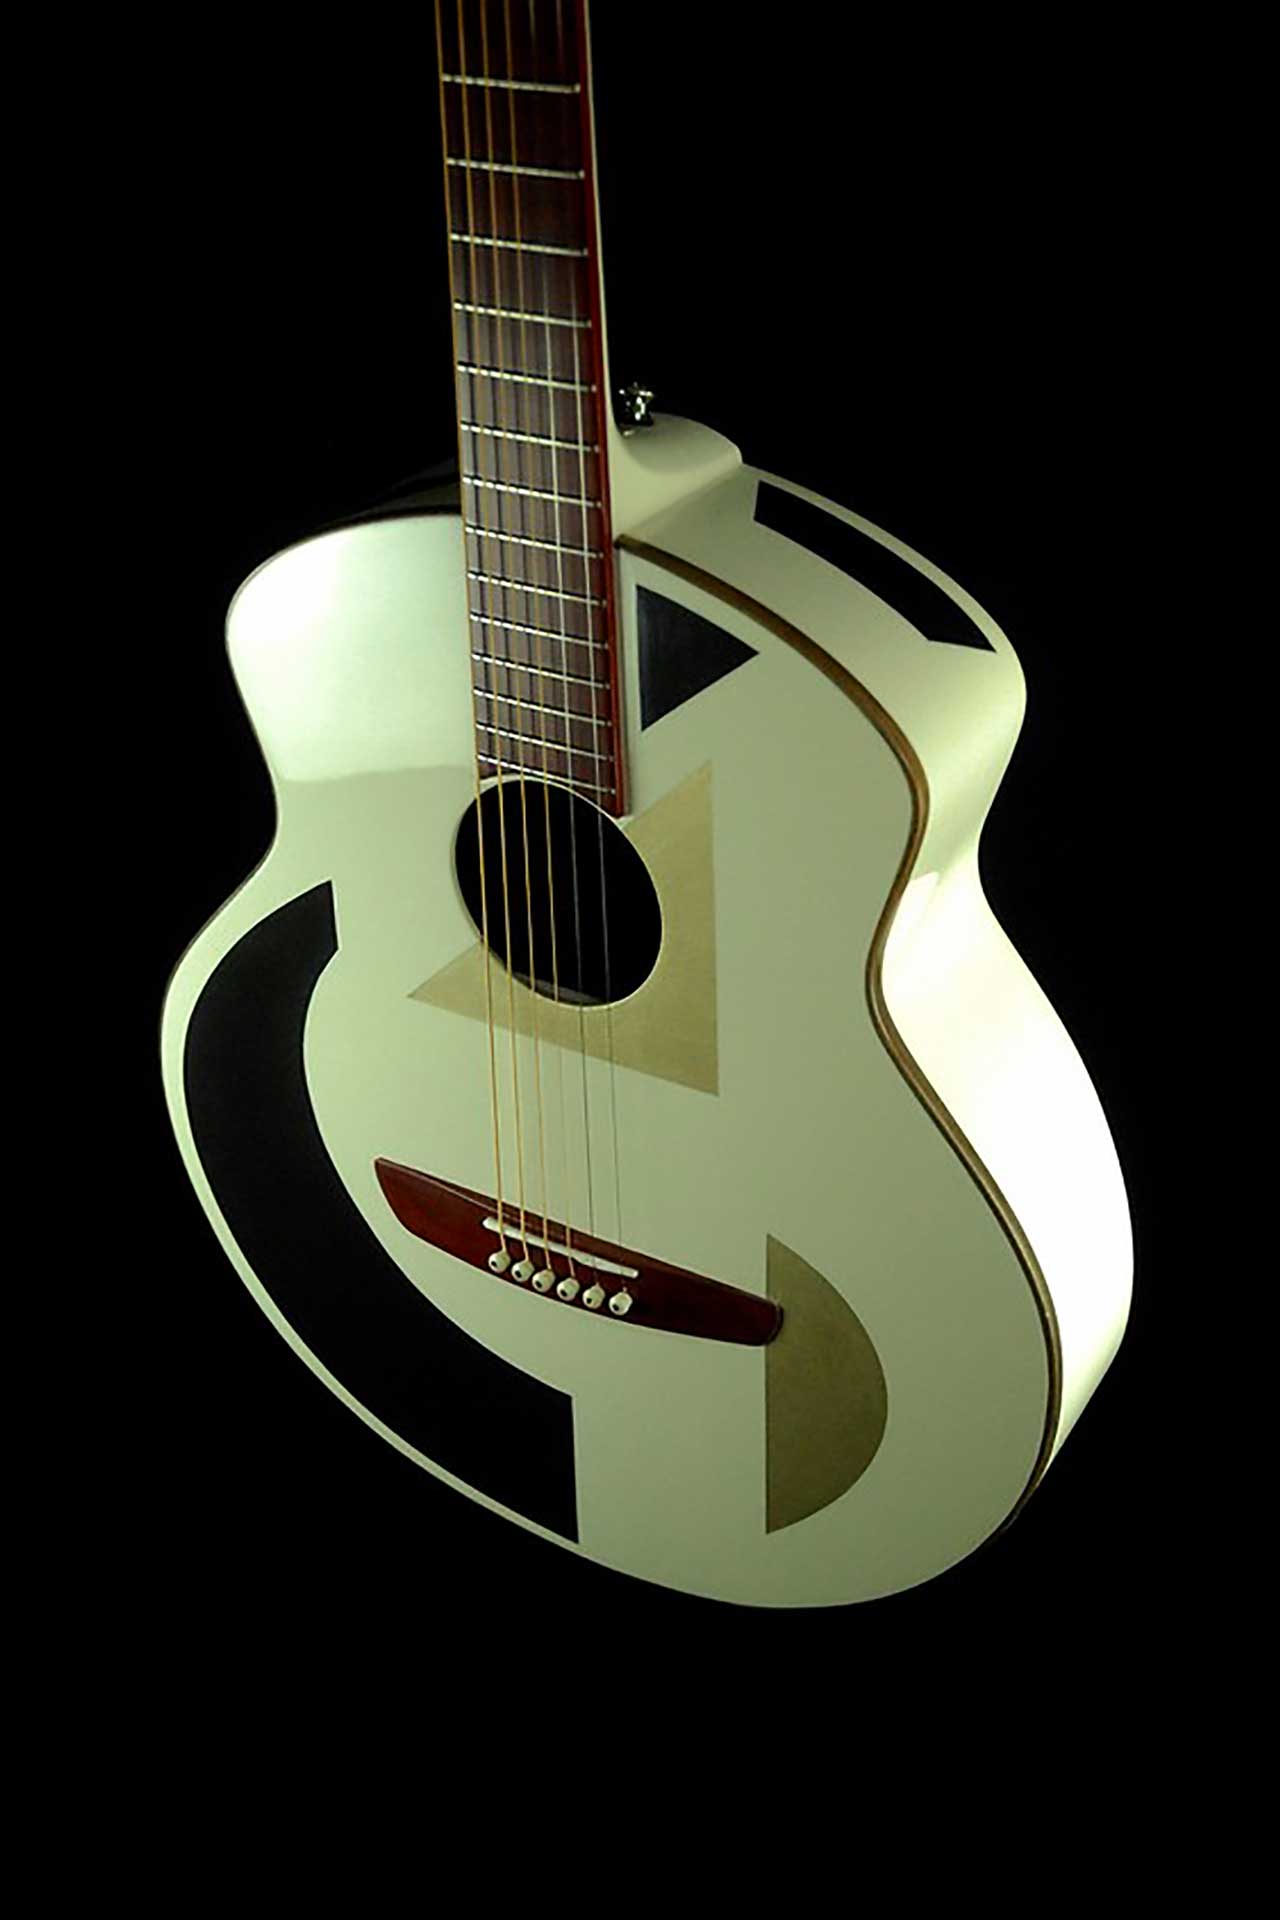 Fred Kopo Guitars Molene Leonard #1 For Sale